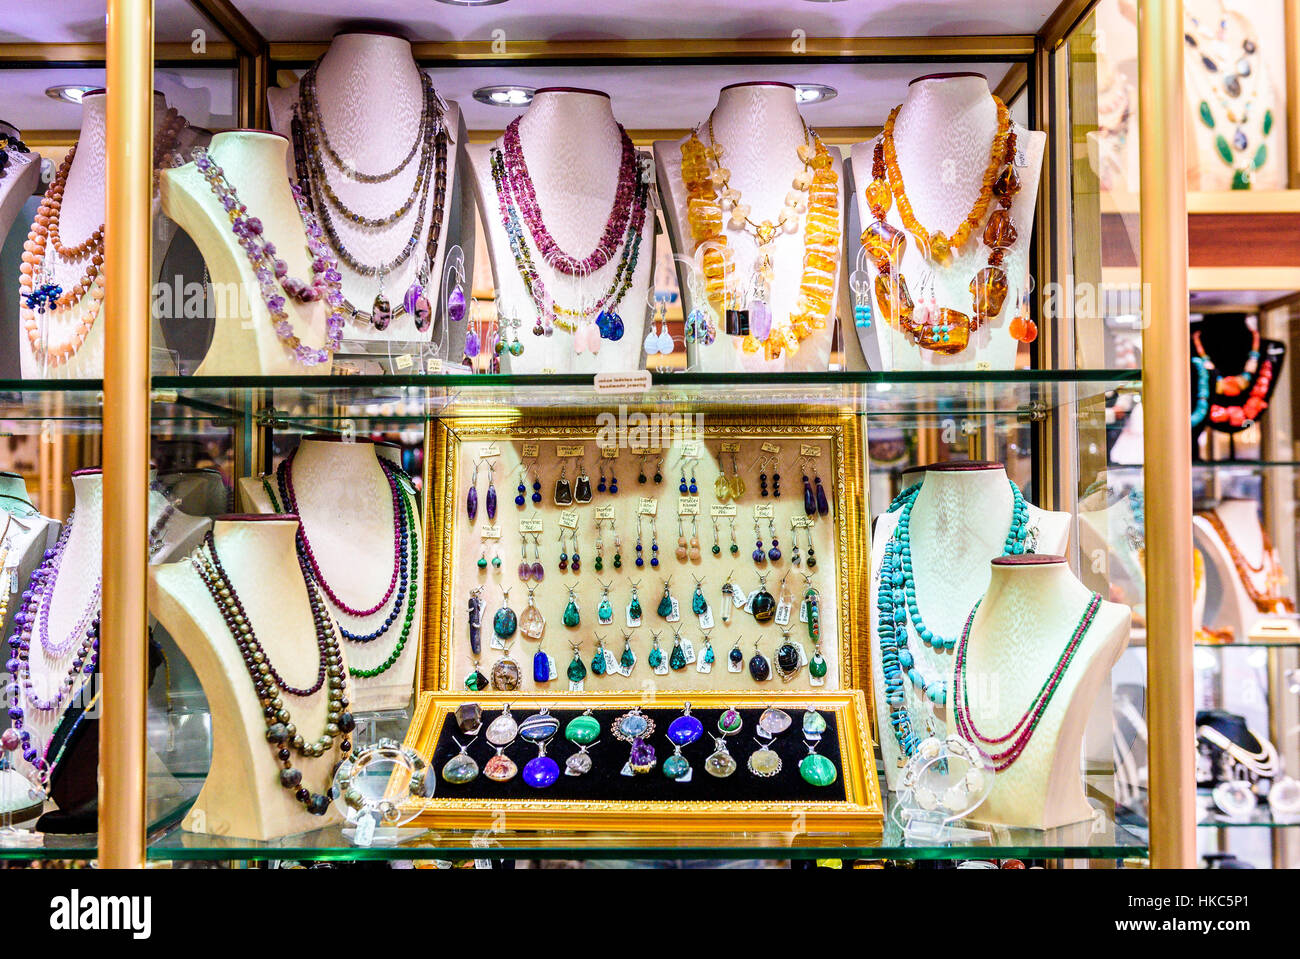 Display con diversi disegni di gioielli fatti a mano su supporto. Close-up di gioielli fatti a mano shop window display. Varietà di orecchini, collane, anelli, b Foto Stock